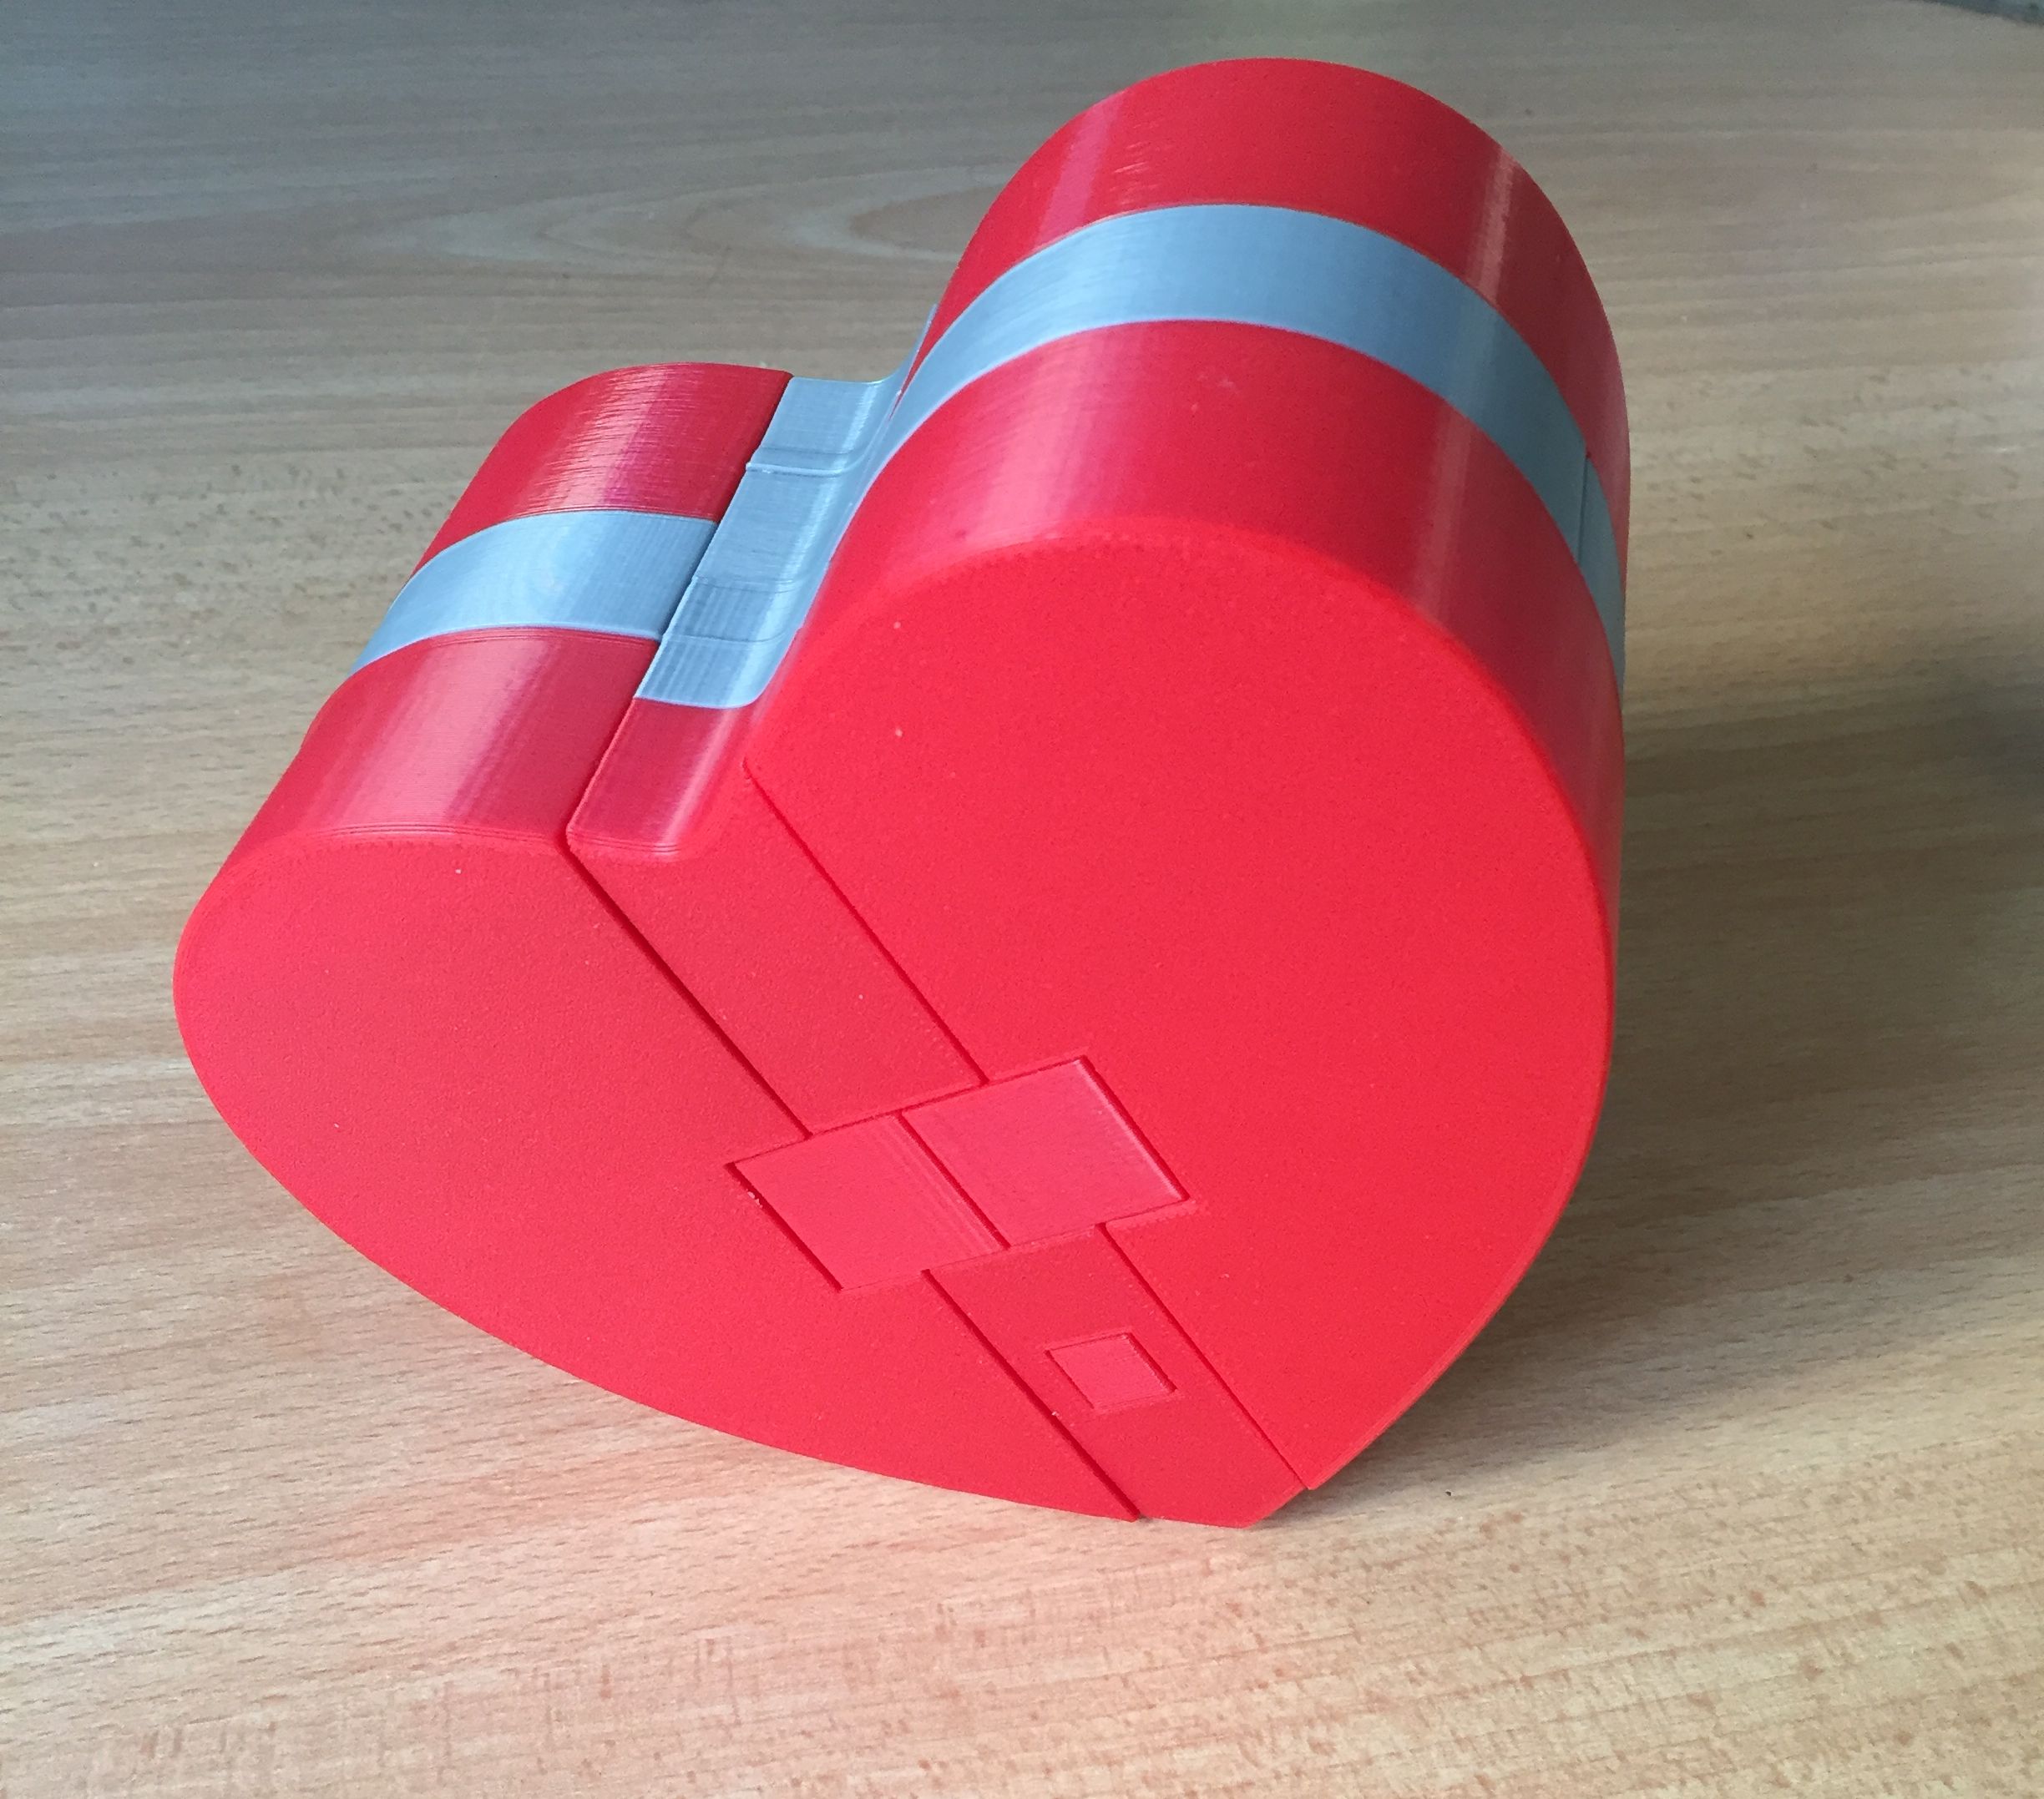 Puzzle #5 Heart puzzle, secret gift box